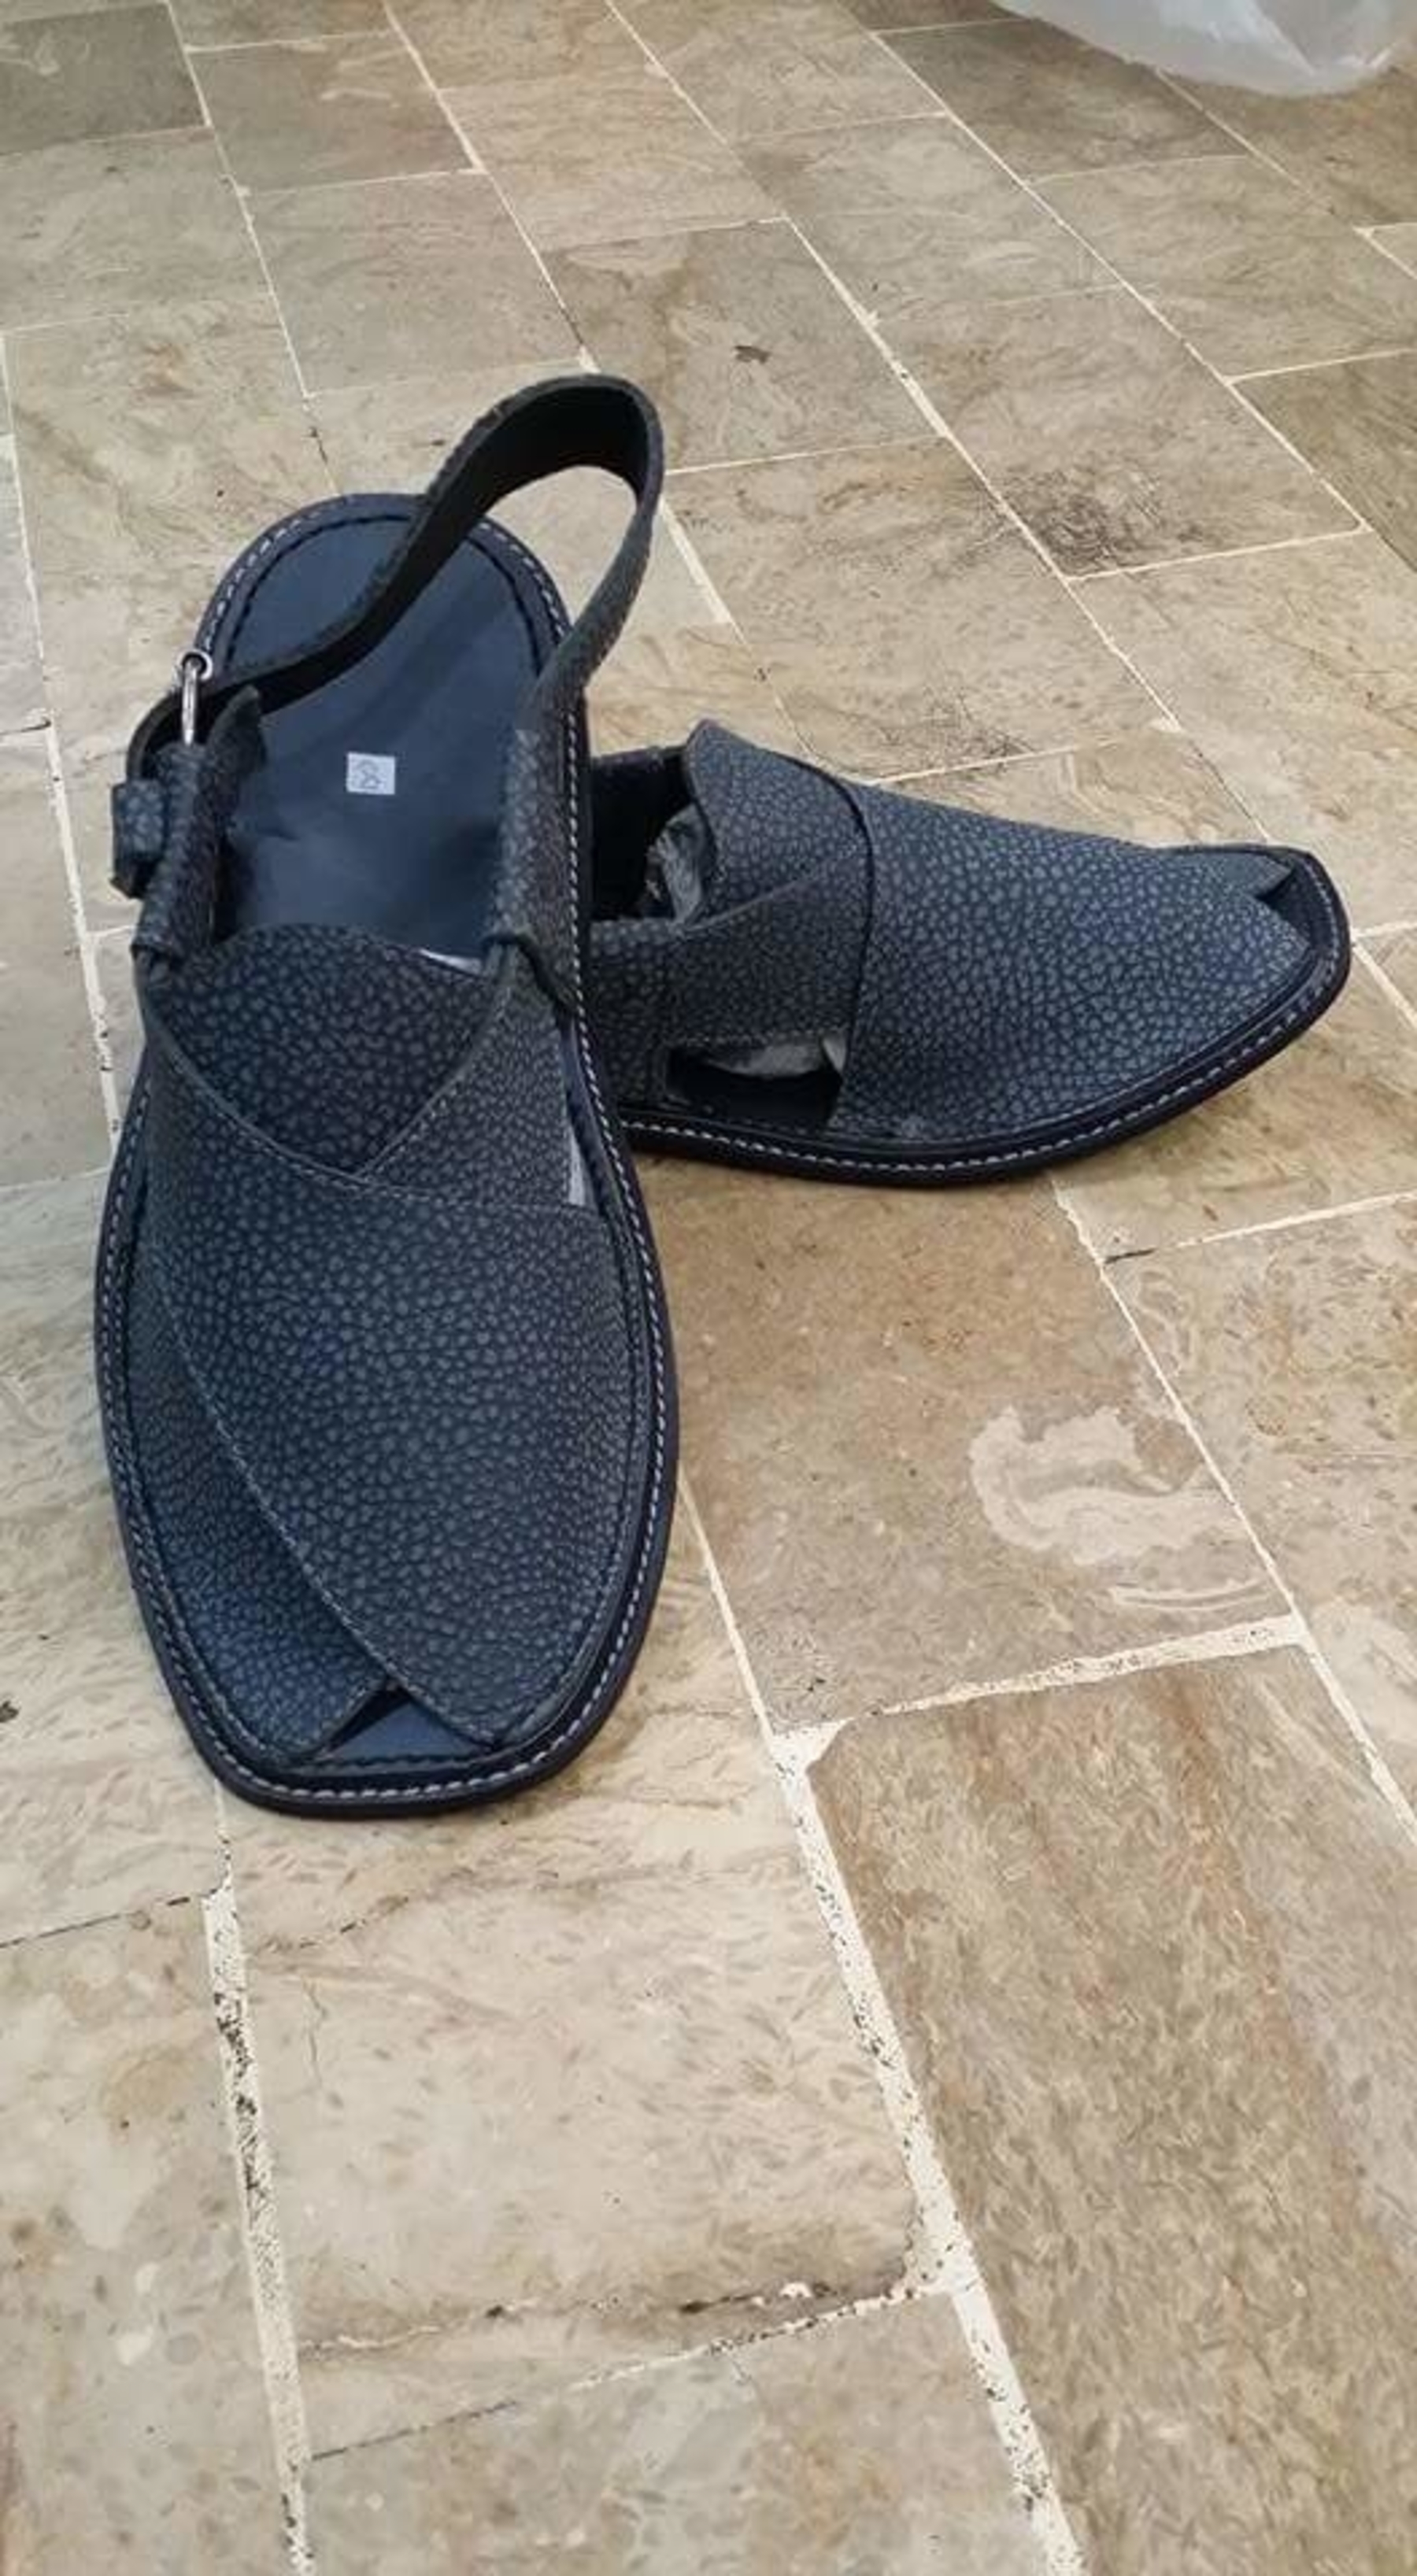 Black shoes photo